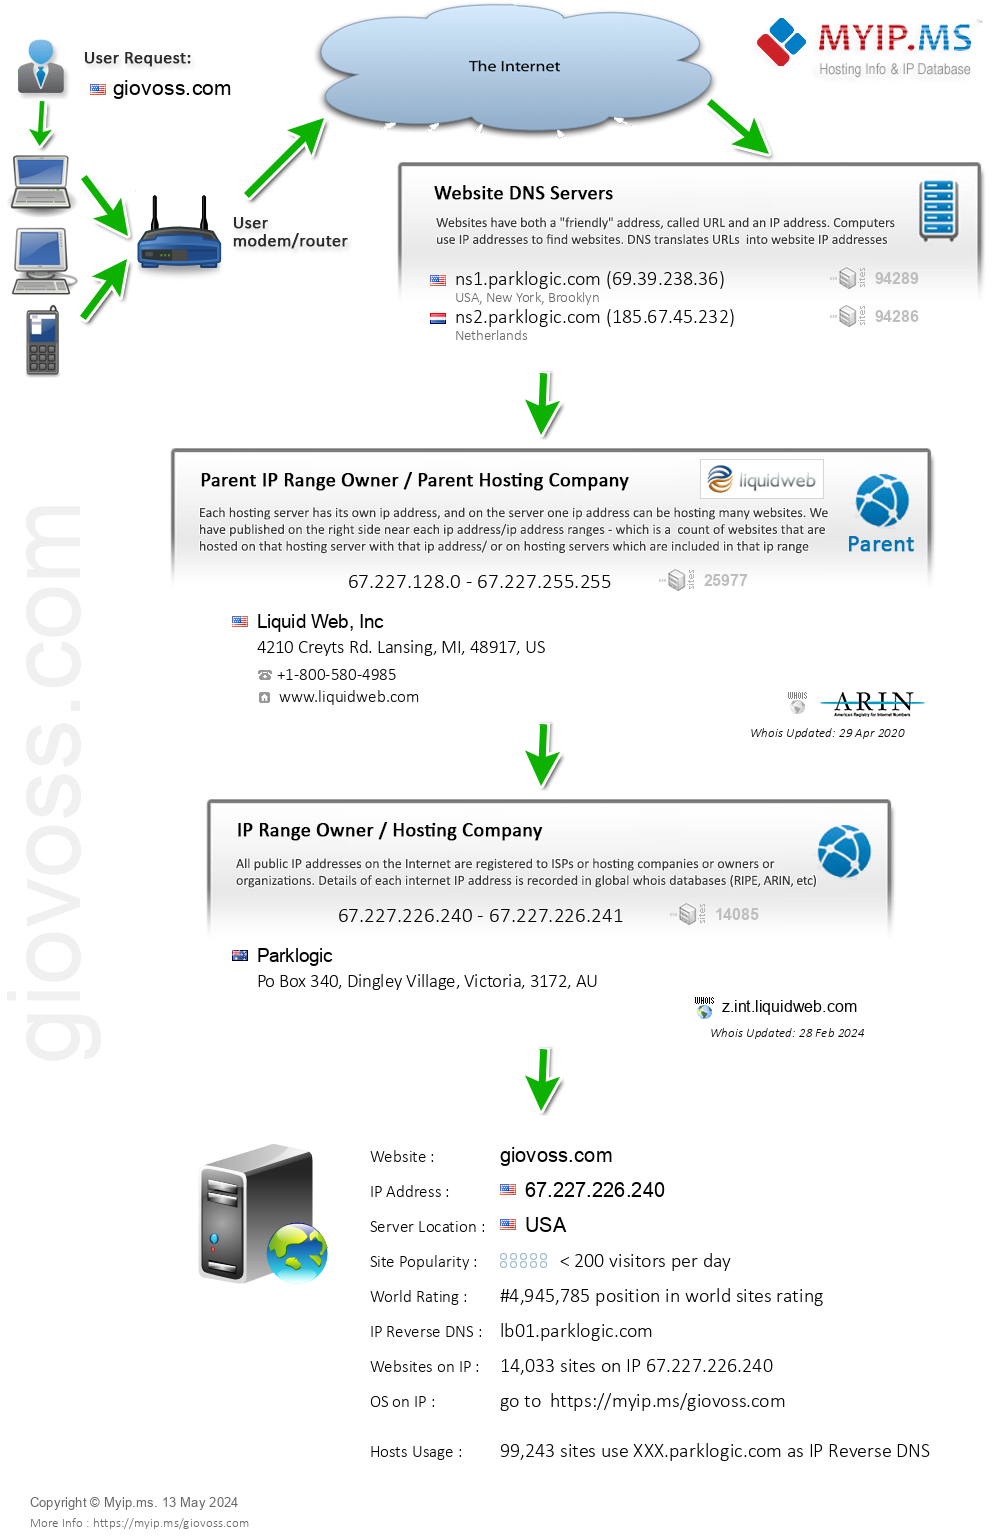 Giovoss.com - Website Hosting Visual IP Diagram